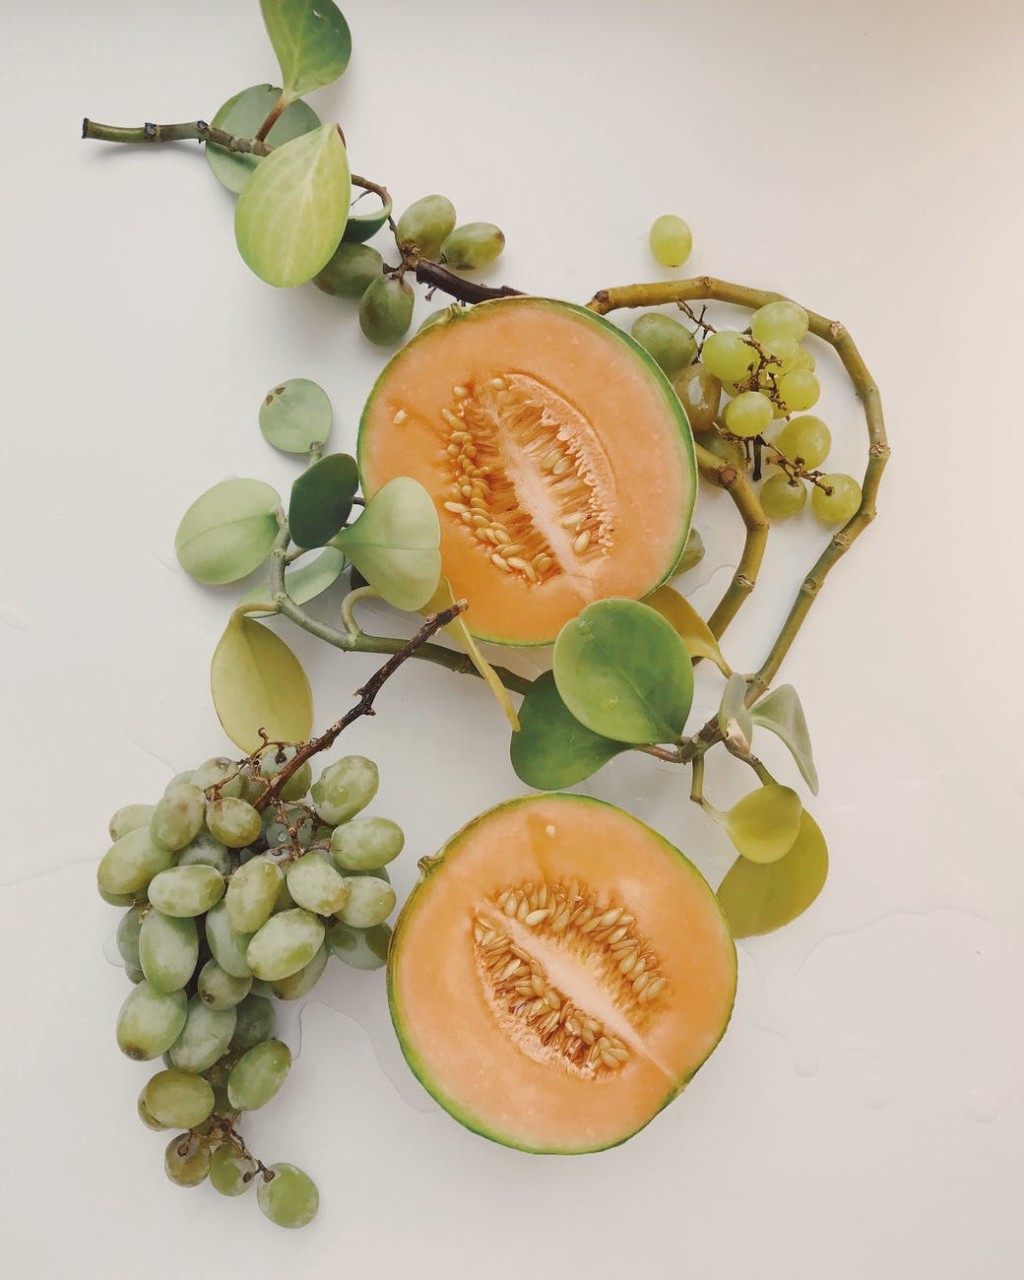 Cantaloup coupé et raisins verts